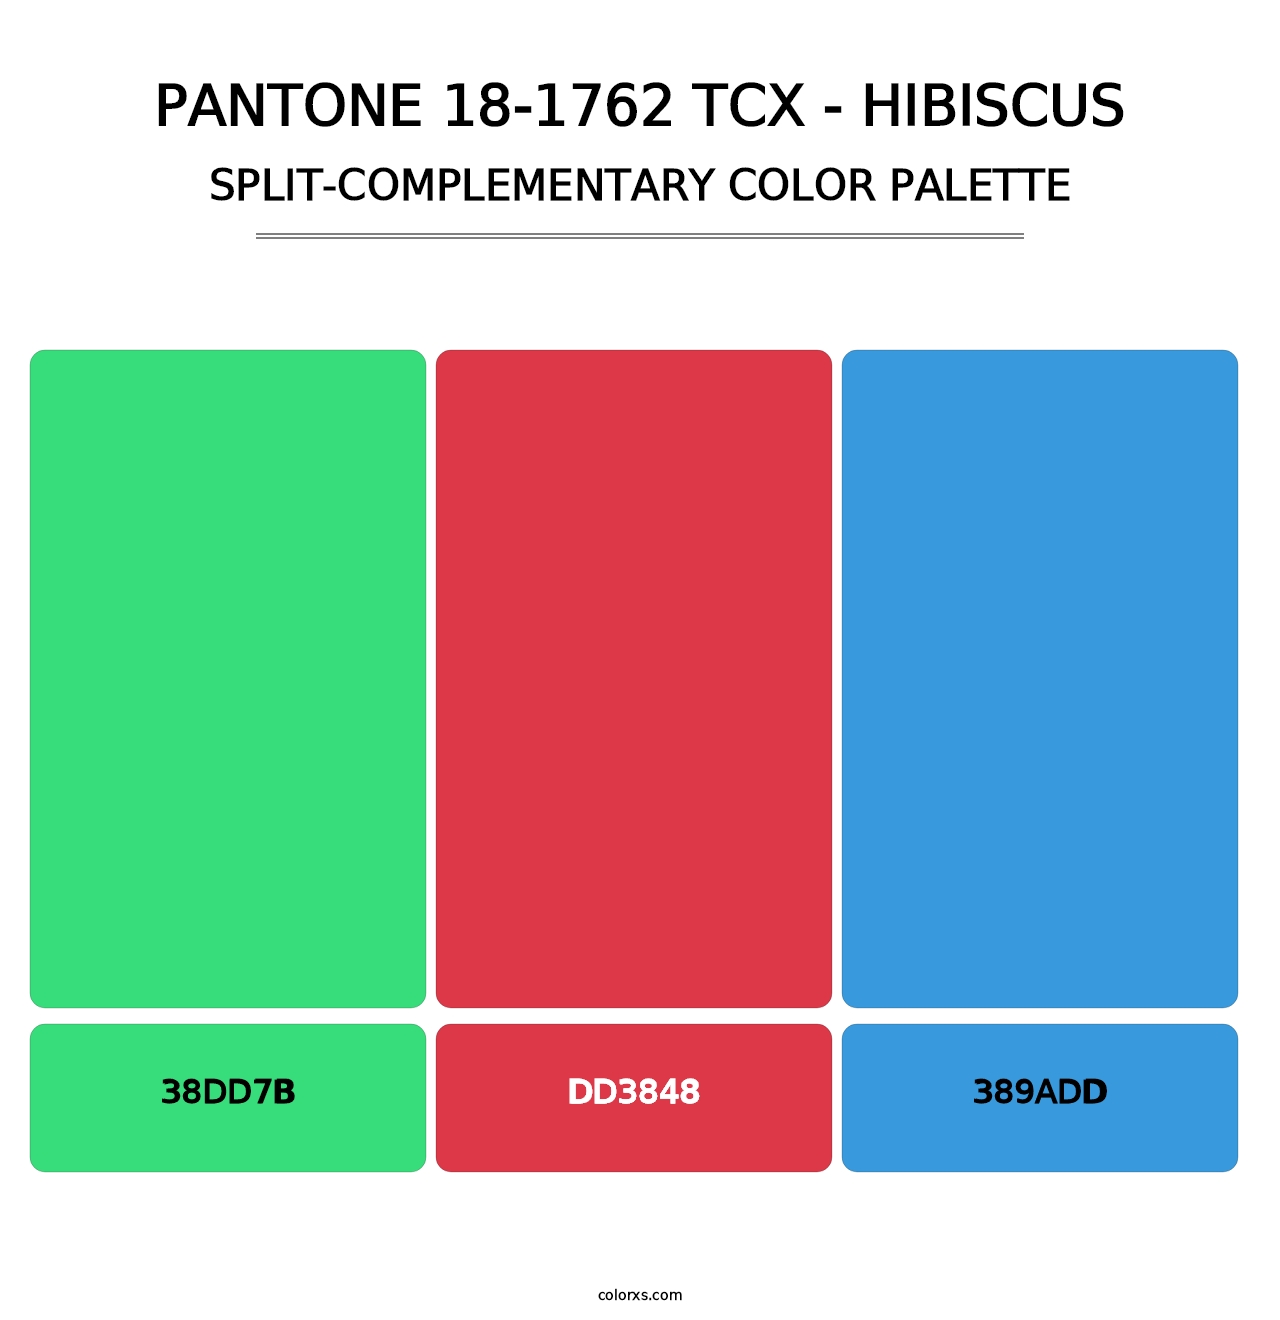 PANTONE 18-1762 TCX - Hibiscus - Split-Complementary Color Palette